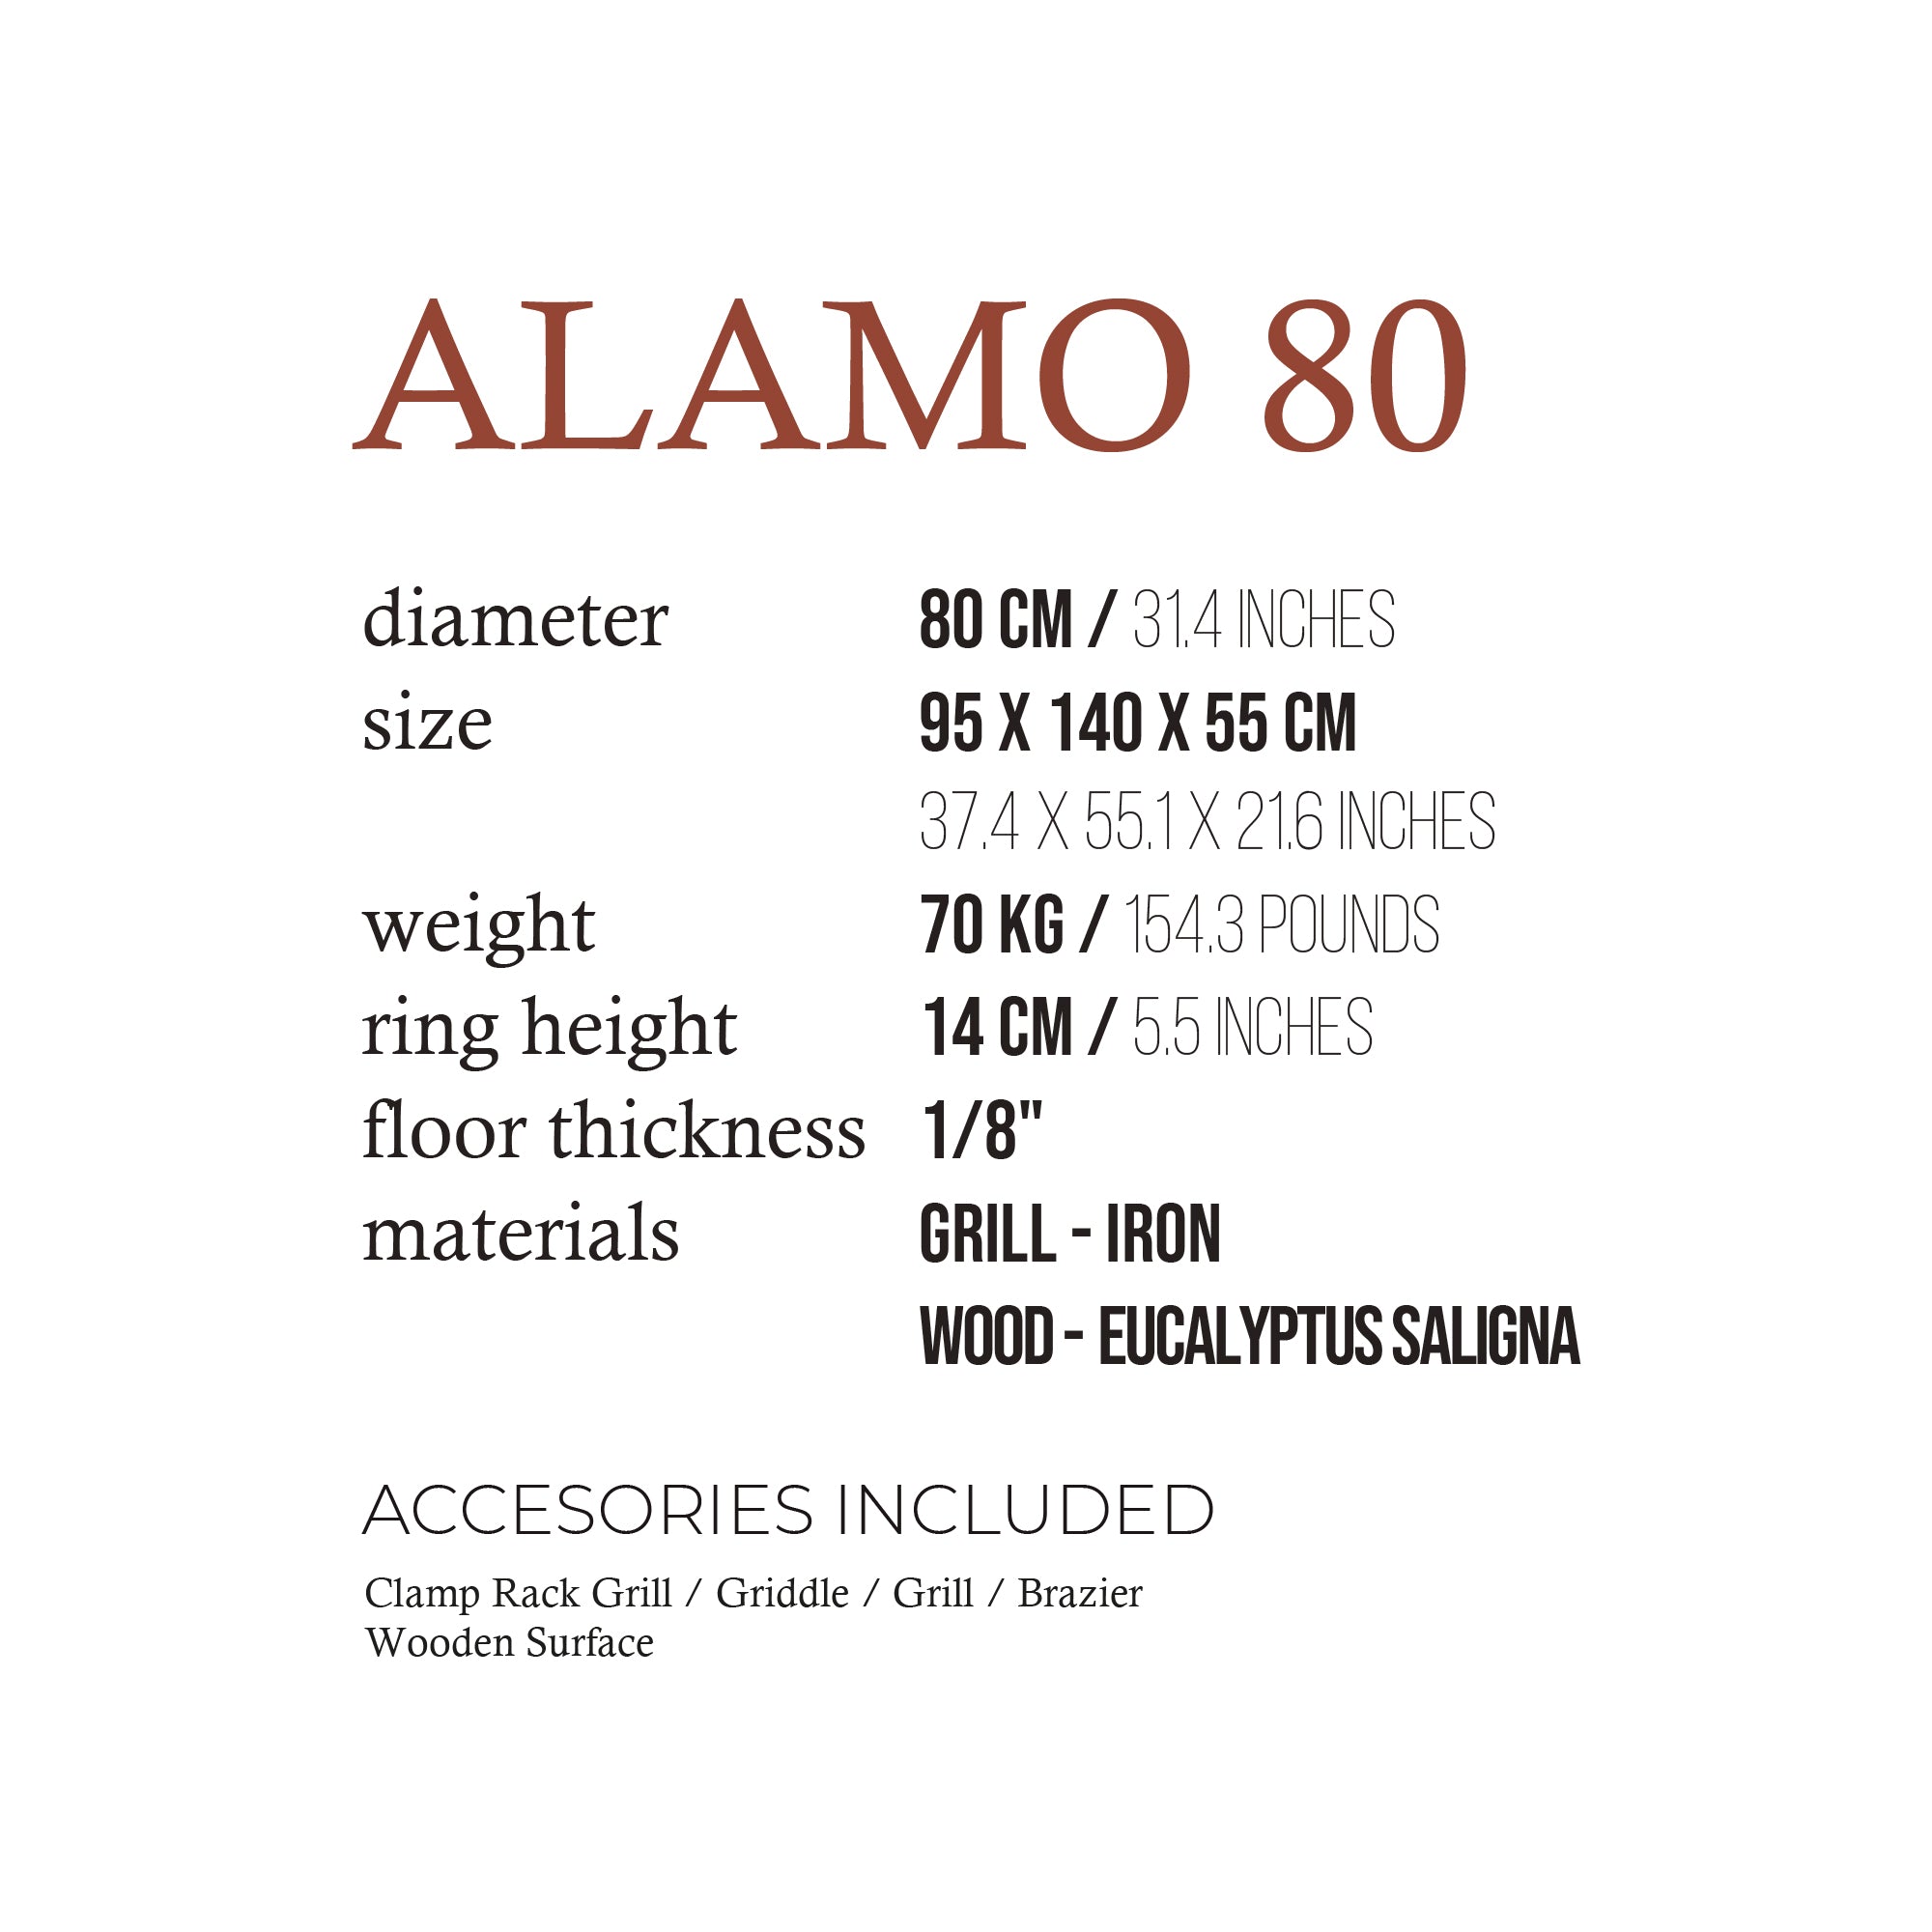 ALAMO 80